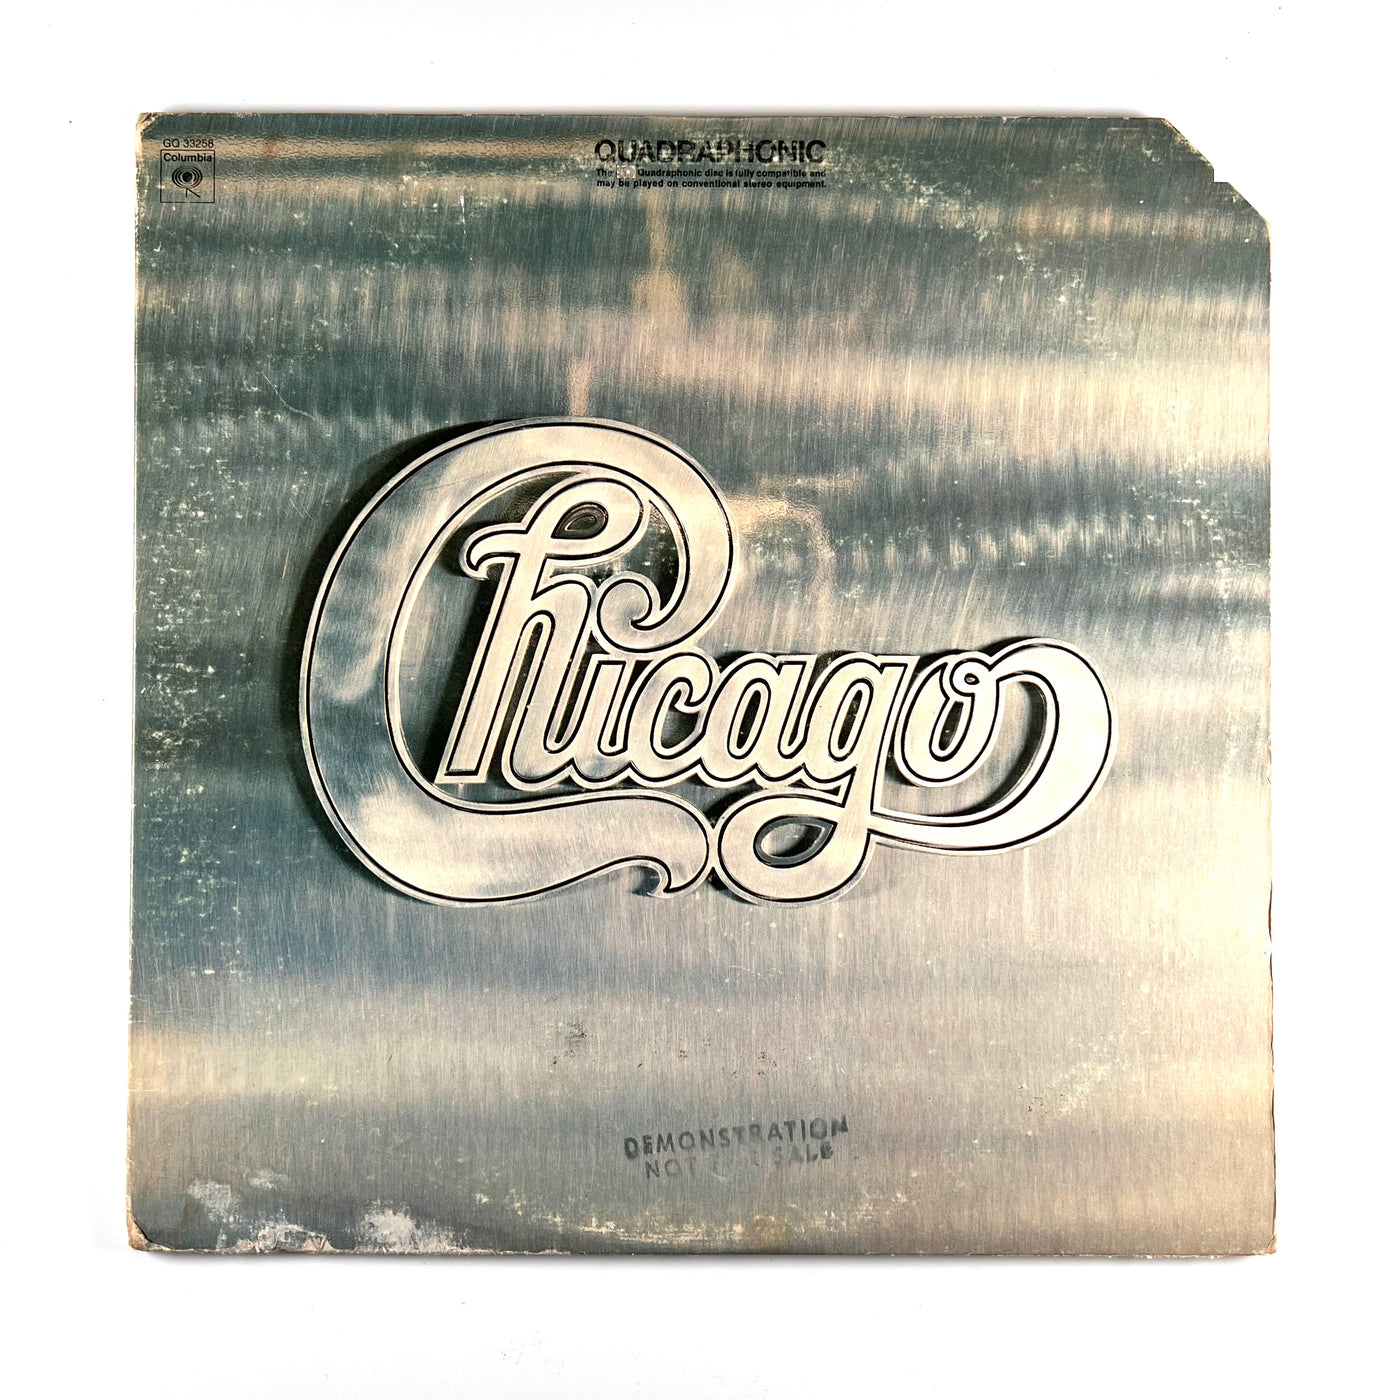 Chicago - Chicago - 1974 Quadraphonic